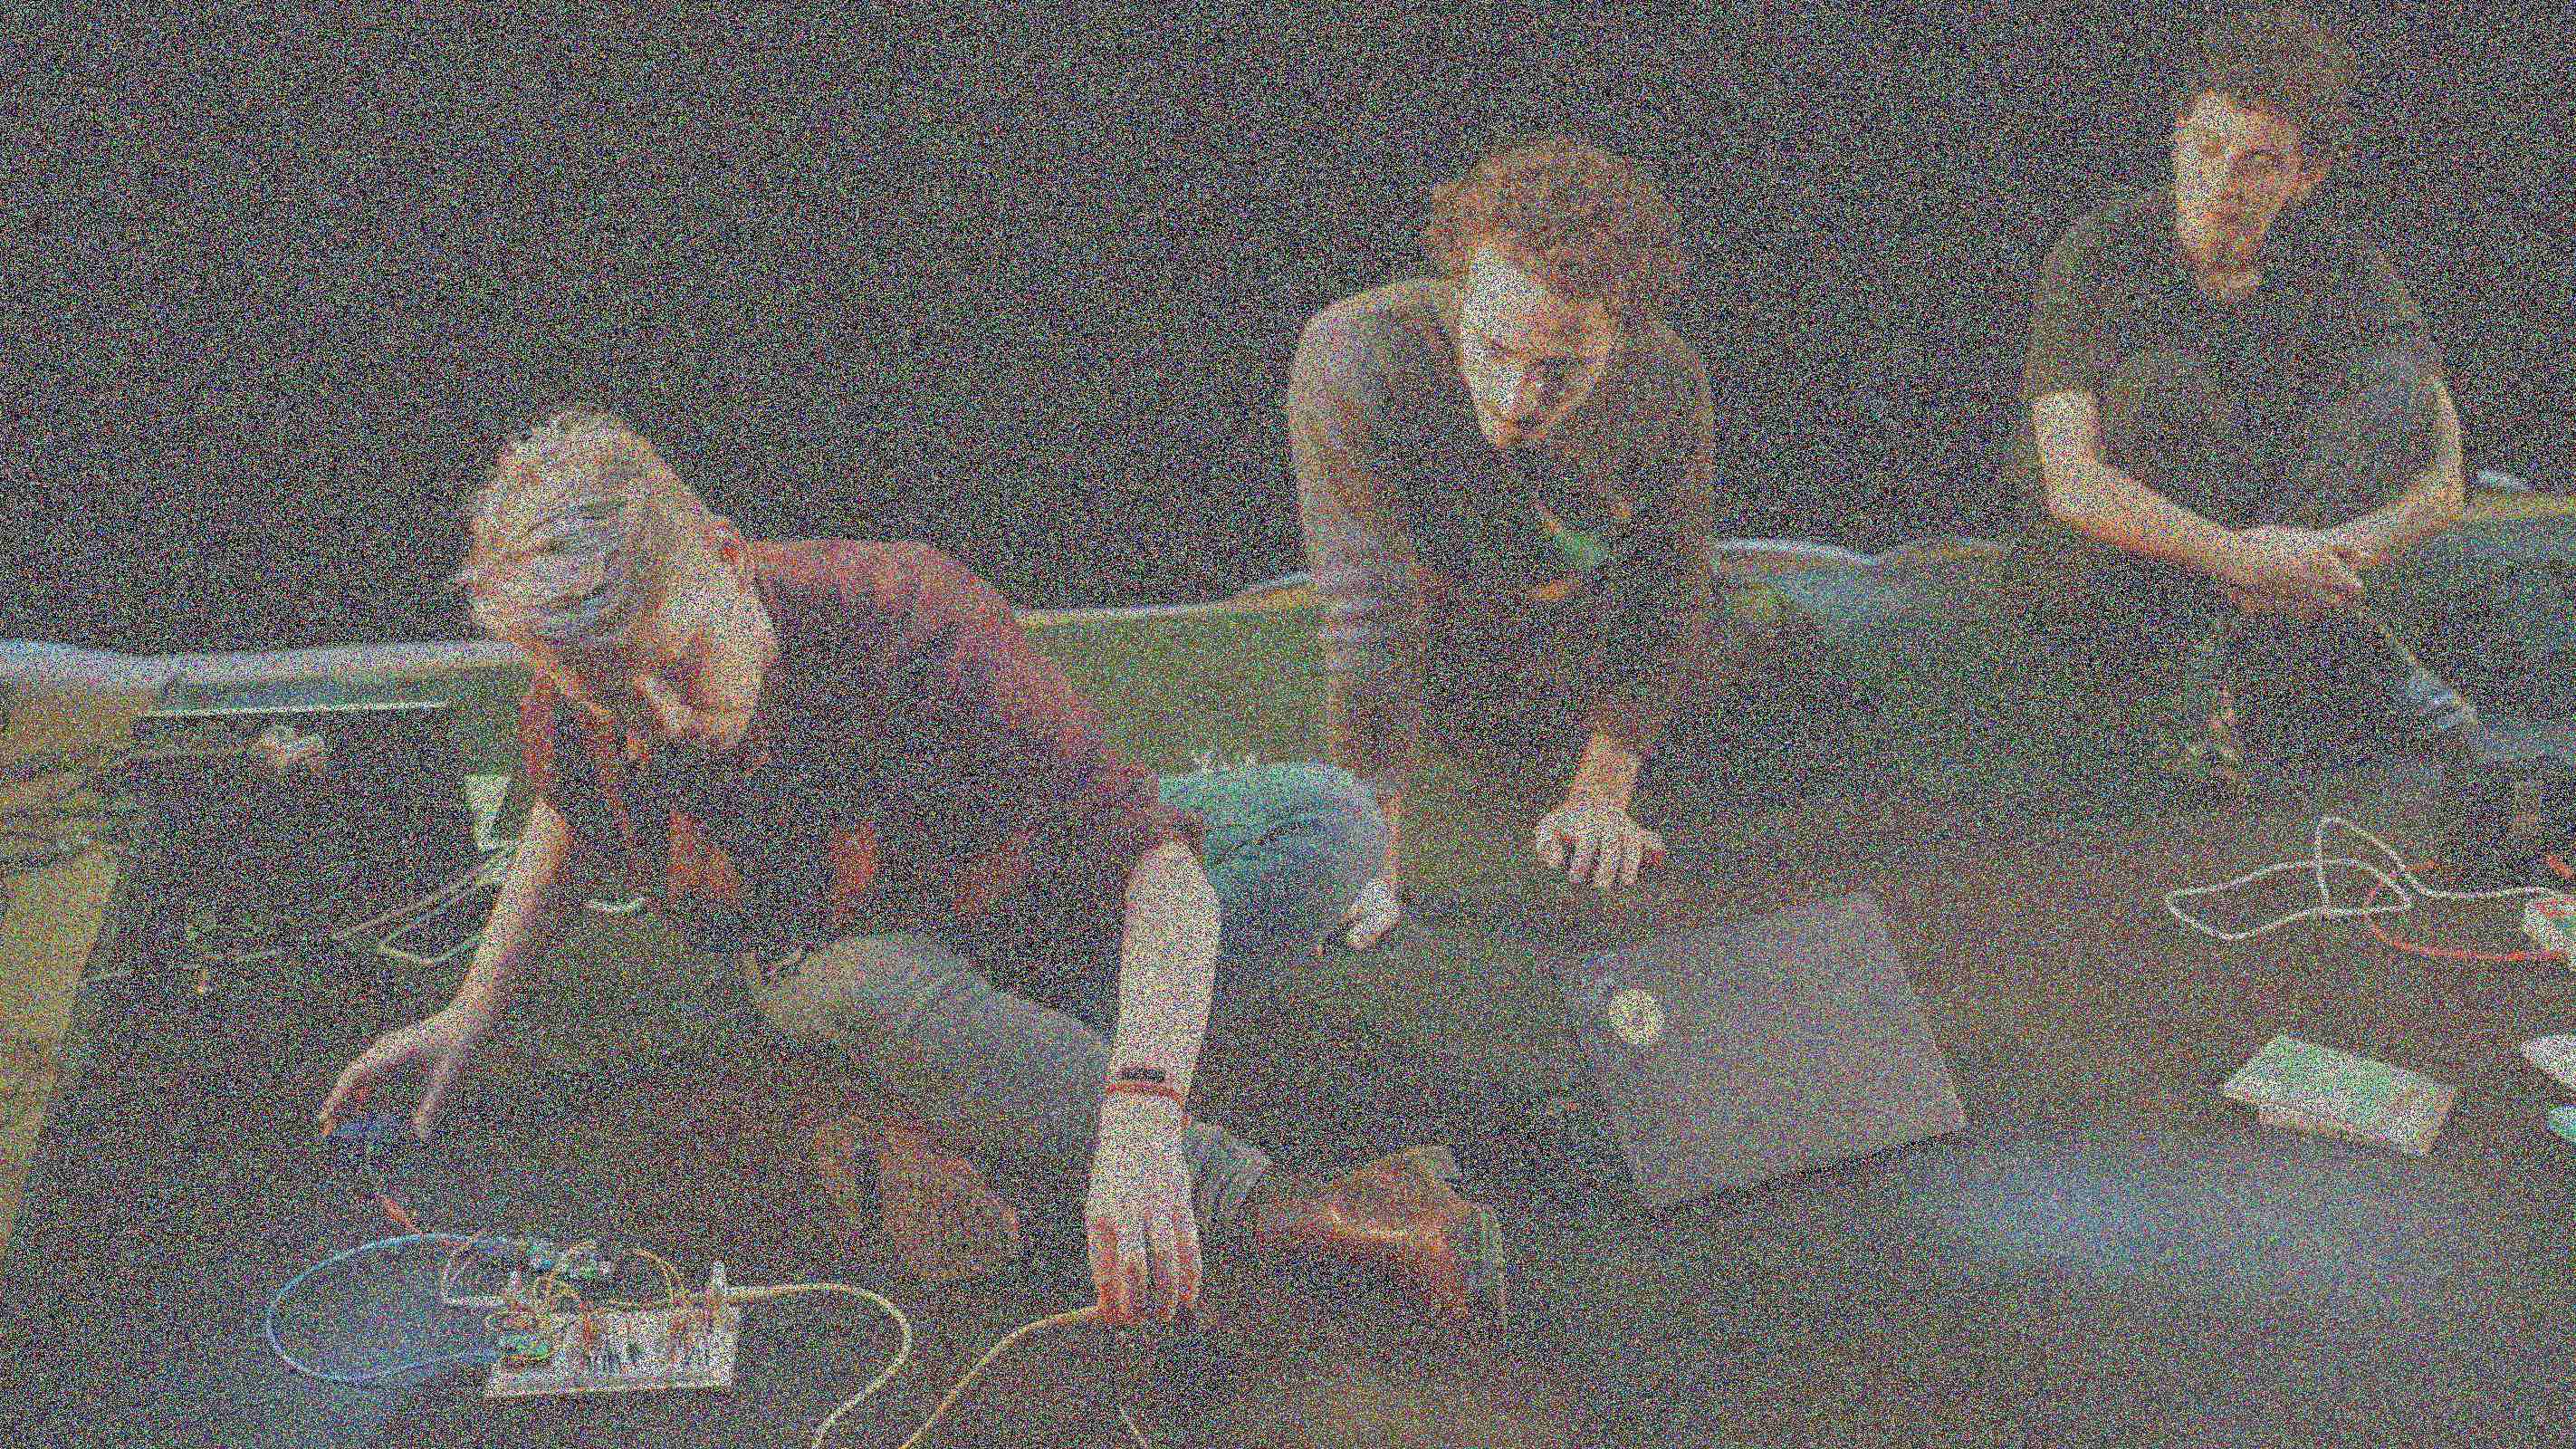 Drie mensen zitten op de vloer en kijken naar de persoon die elektronische prototypes met veel draden manipuleert.